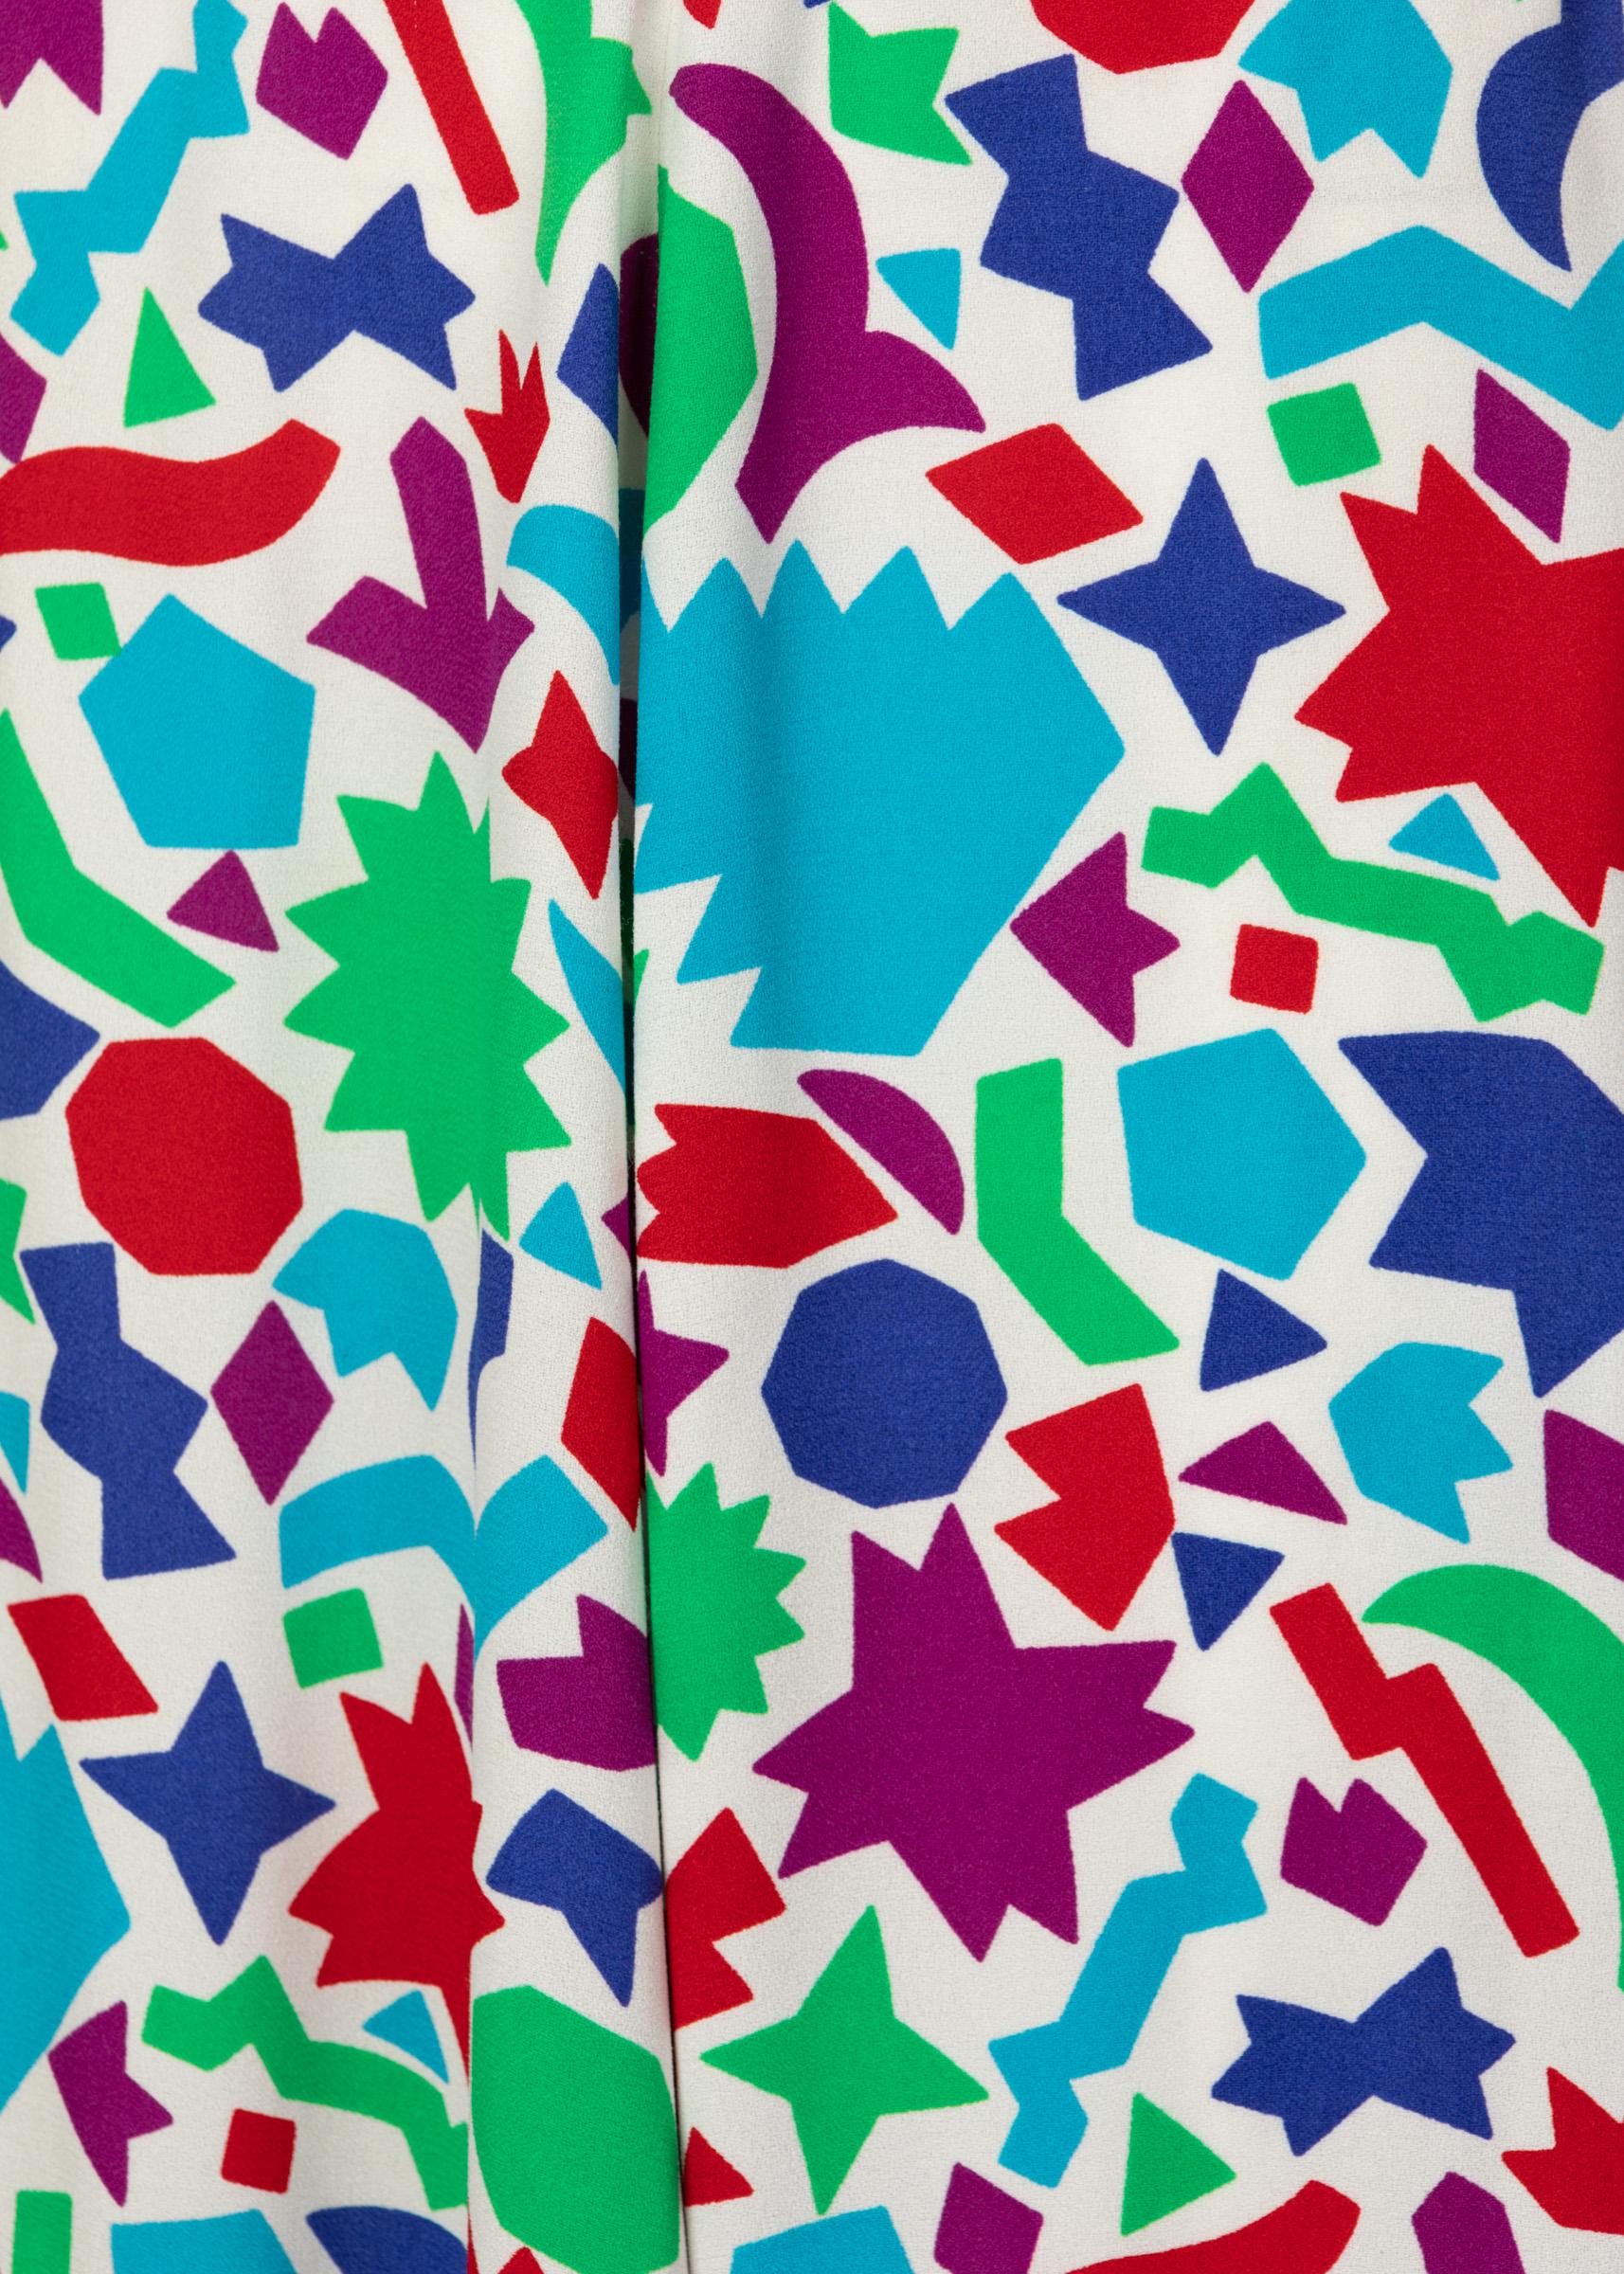 Yves Saint Laurent Matisse Inspired Skirt 2